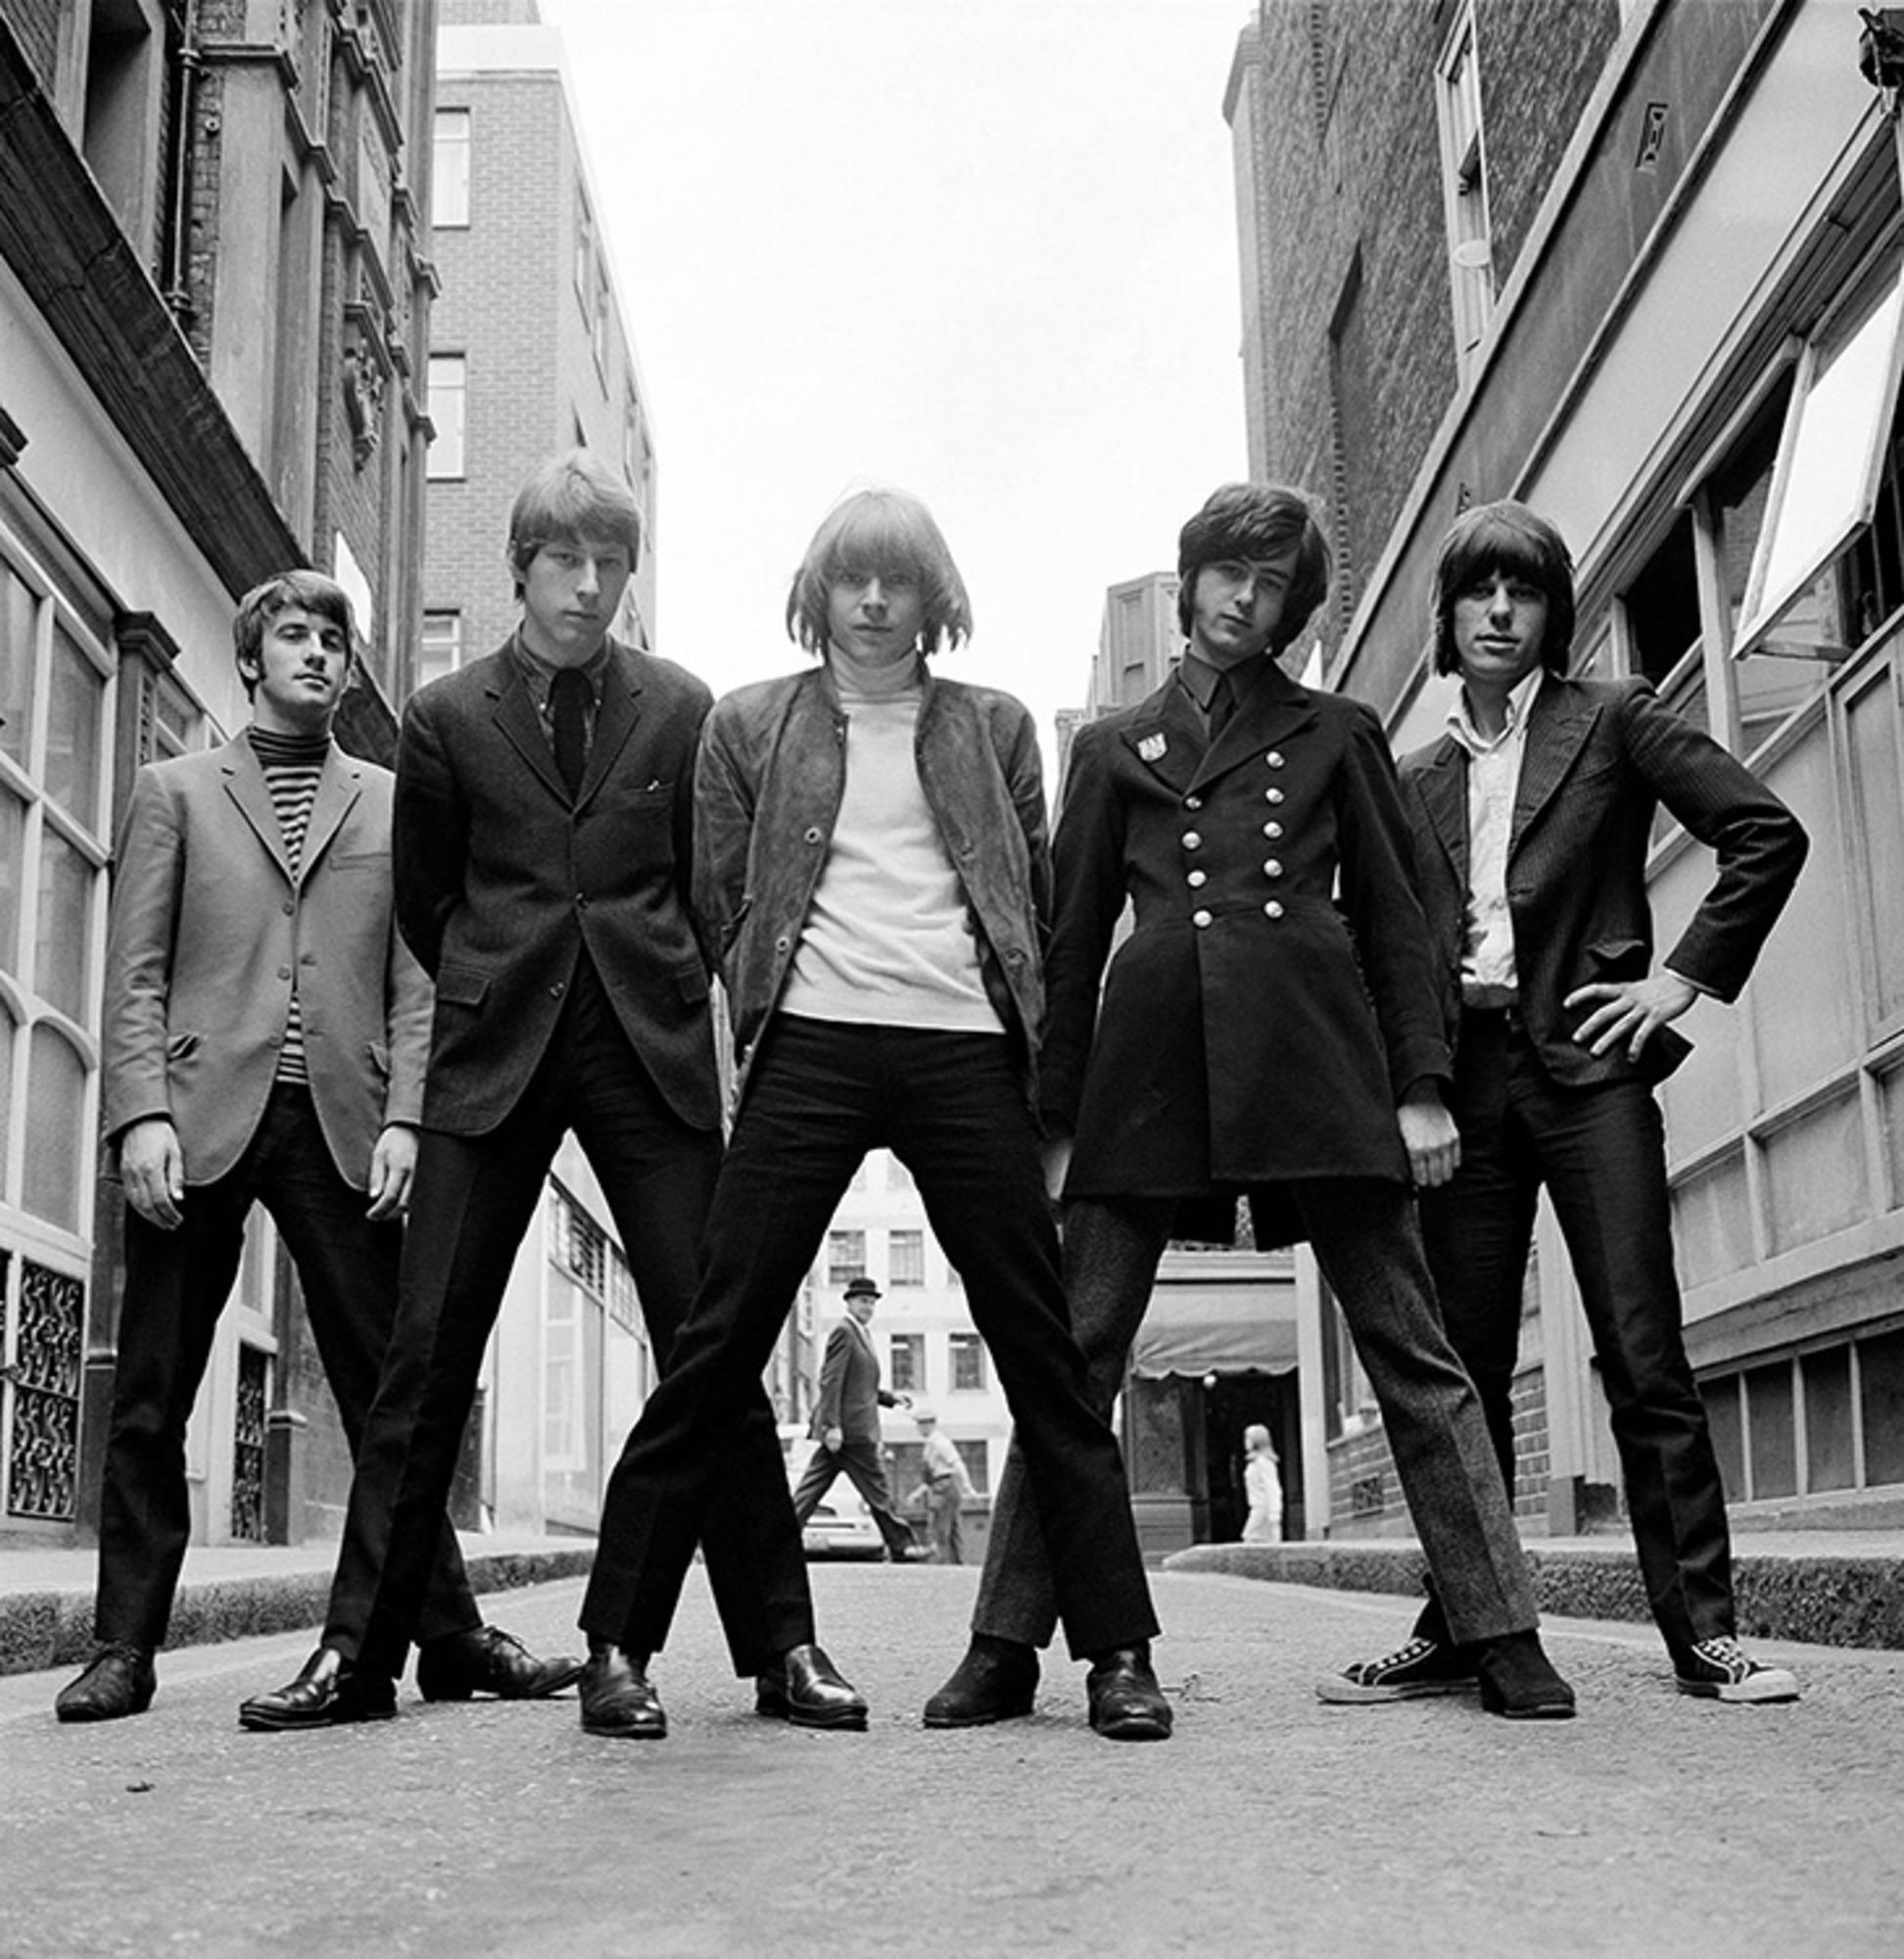 Gélatine argentique, signée et numérotée

Le groupe britannique The Yardbirds photographié à Ormond Yard, Londres, 1965.

Tailles disponibles :
16" x 20" Edition de 50
20" x 24" Edition de 50
30" x 40" Edition de 25
50" x 53" Édition de 24

Cette